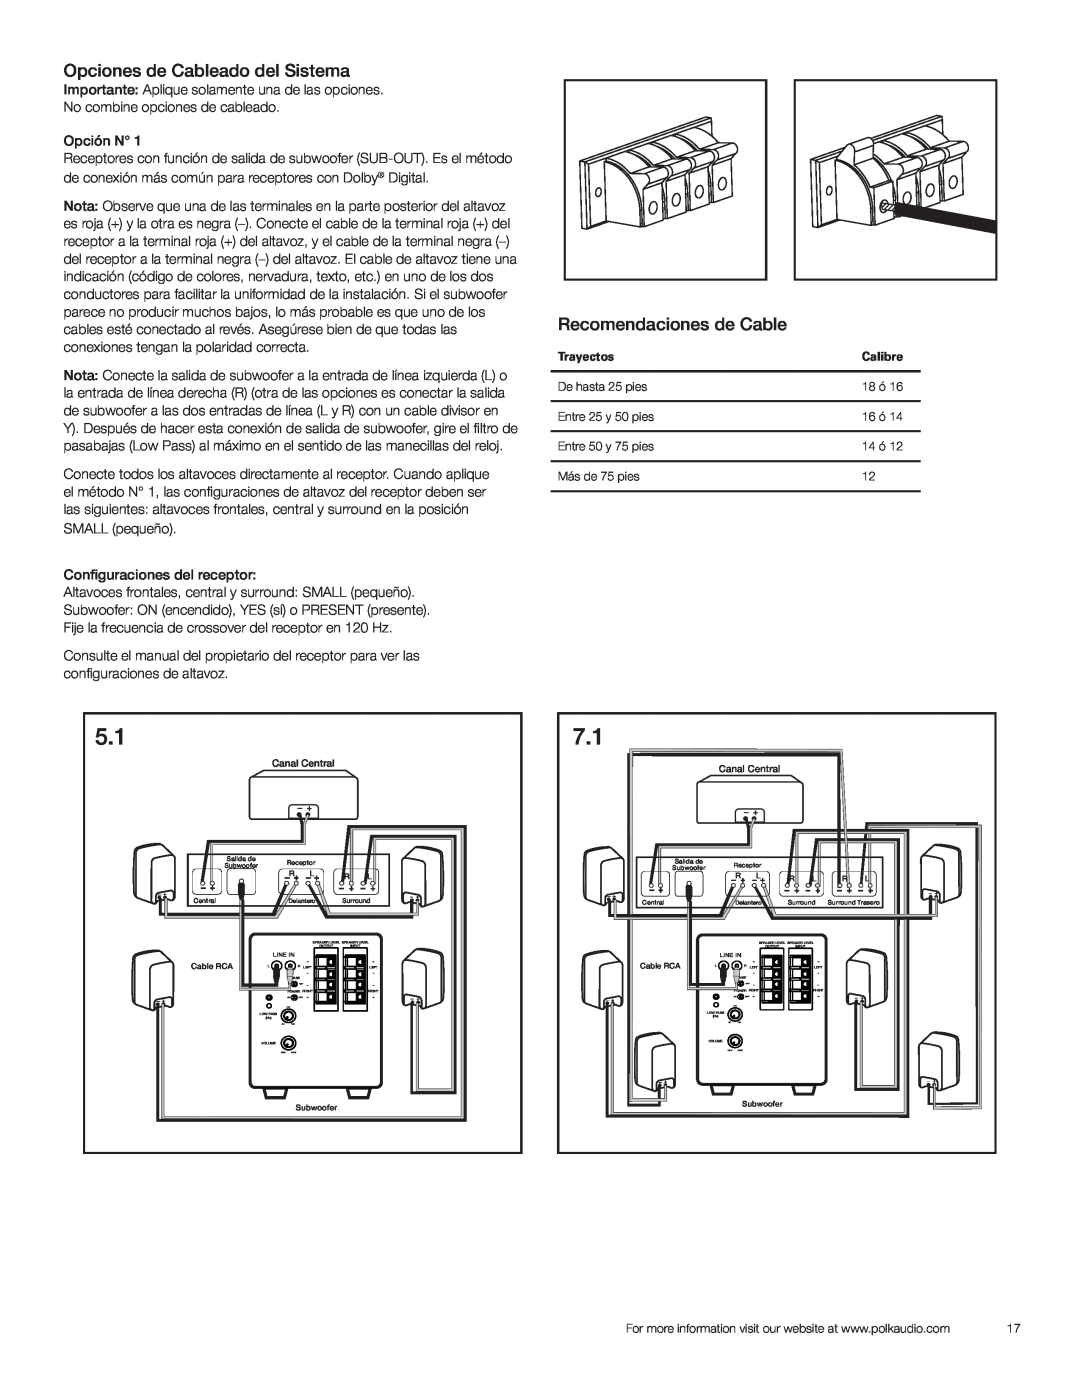 Polk Audio PSW121 owner manual Opciones de Cableado del Sistema, Recomendaciones de Cable 